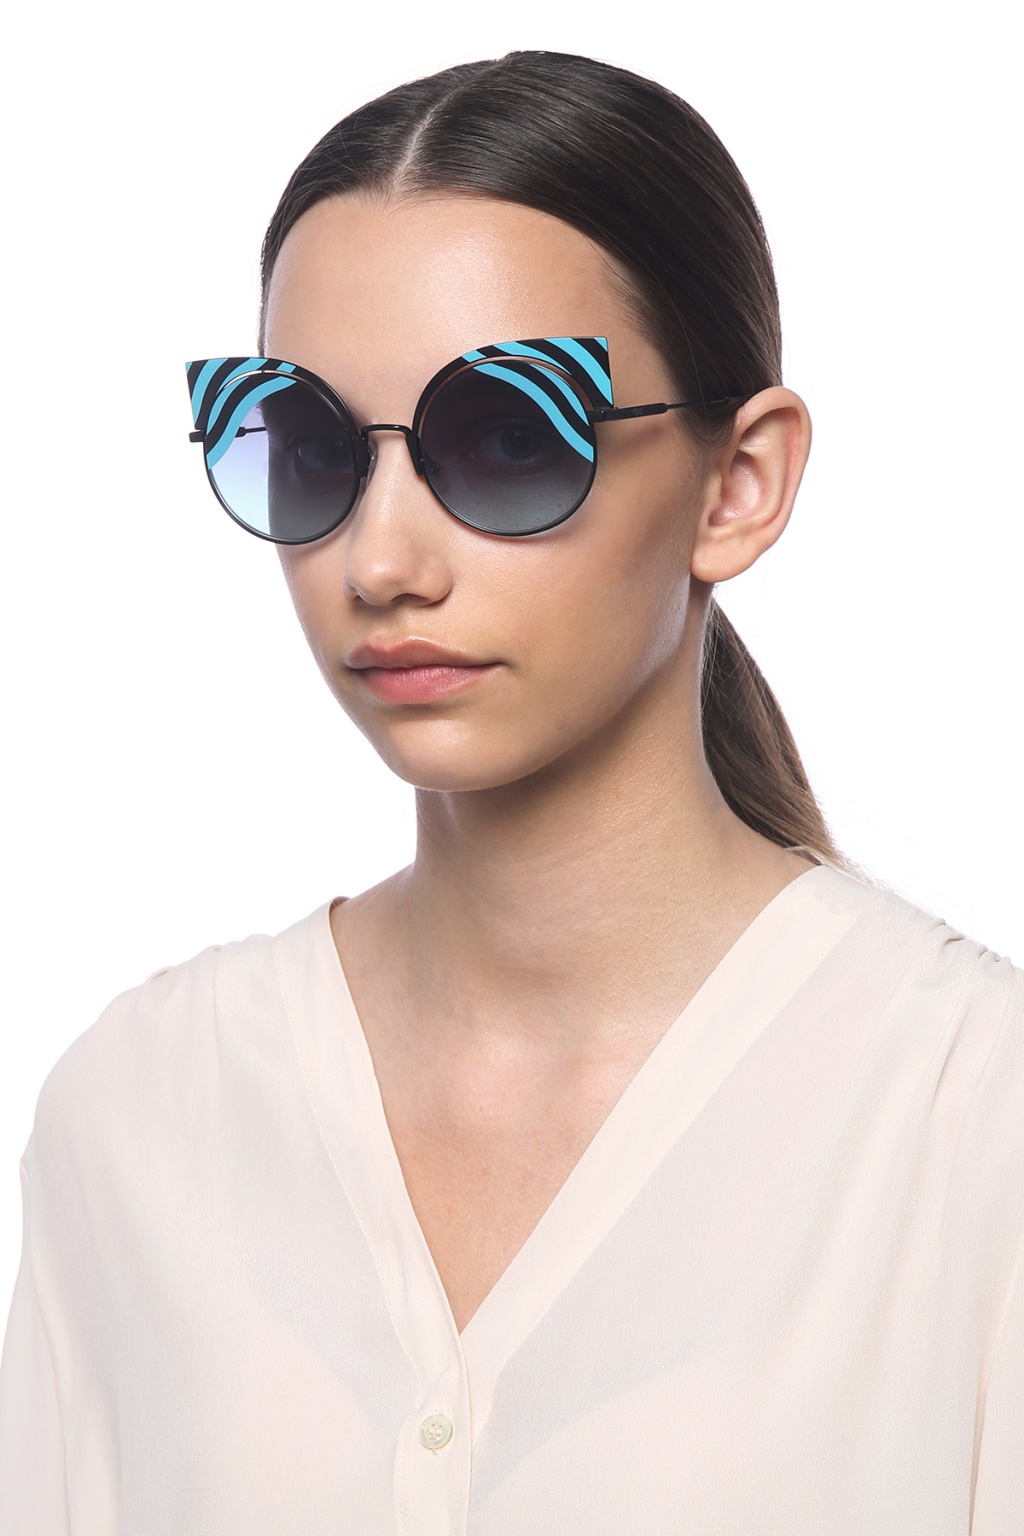 Hypnoshine' sunglasses Fendi - Vitkac 